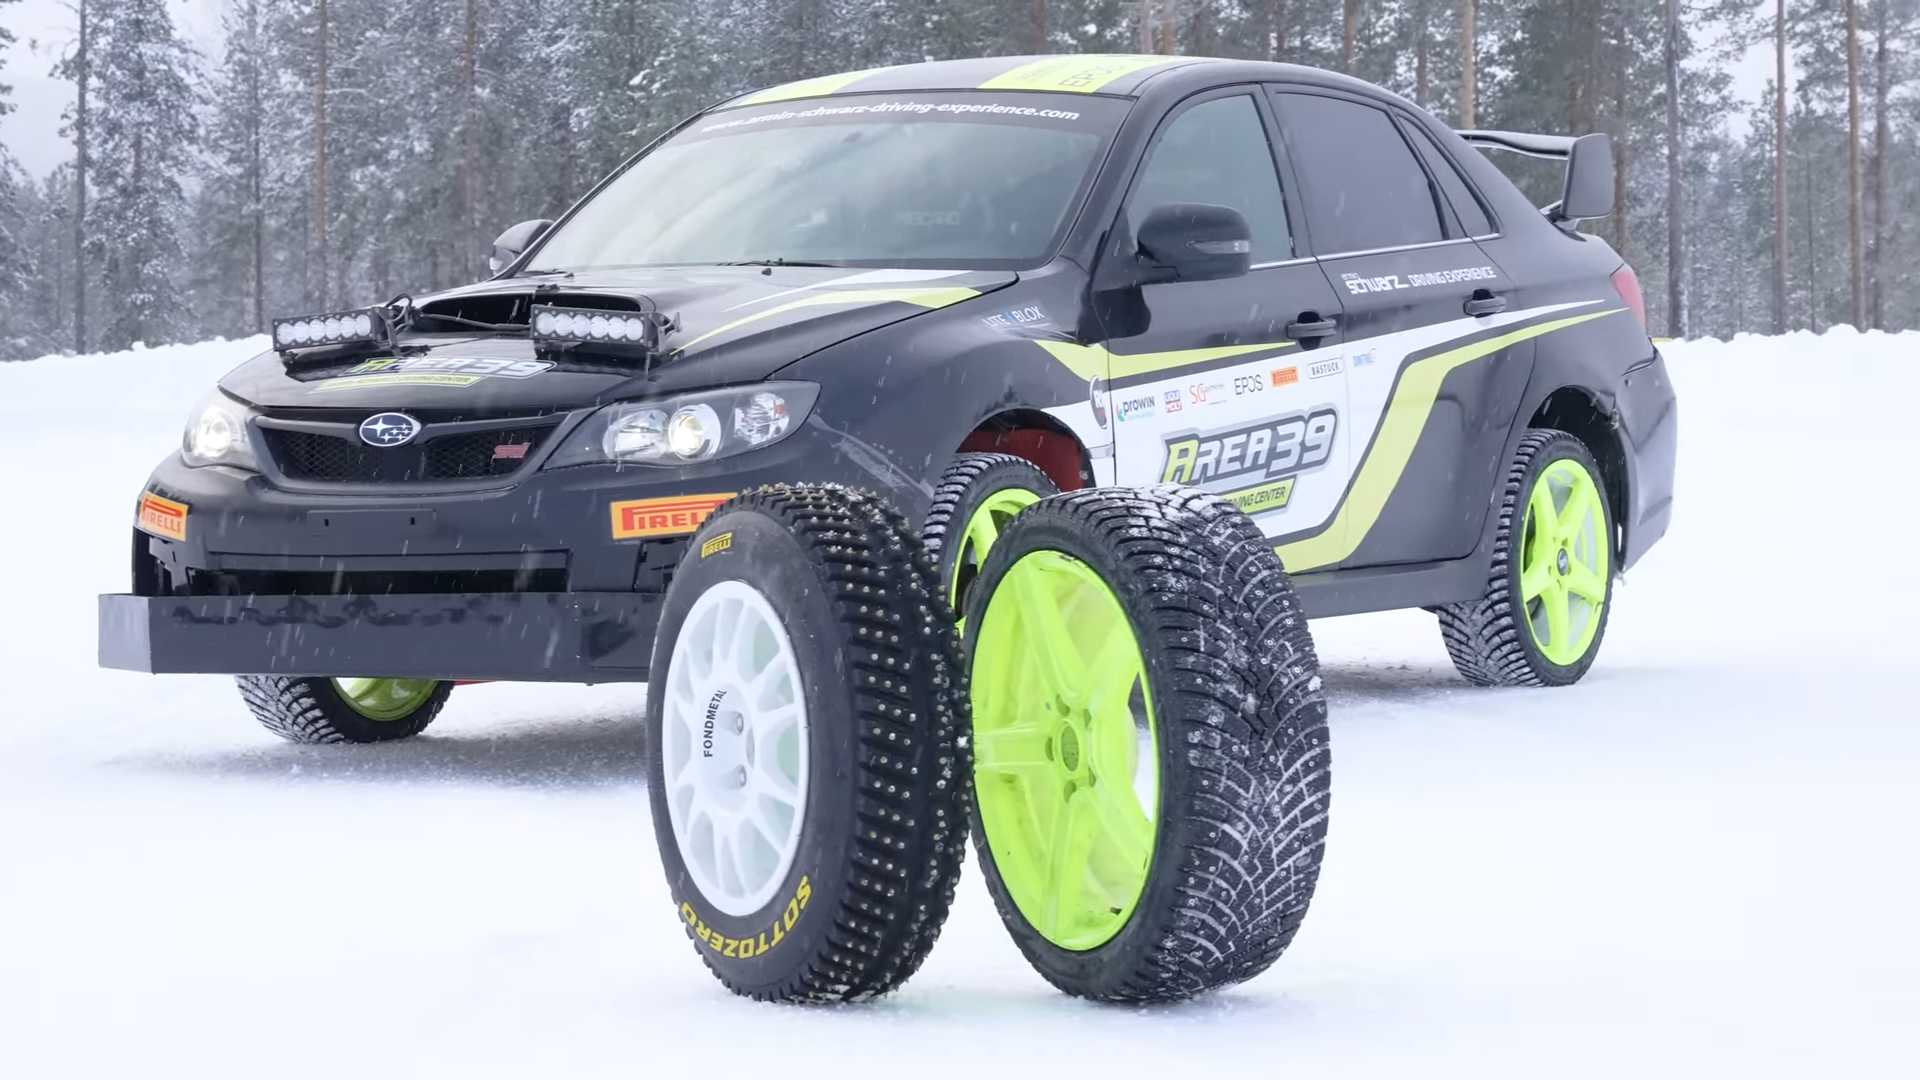 La comparación de neumáticos con clavos muestra un increíble agarre en hielo con los neumáticos WRC Rally